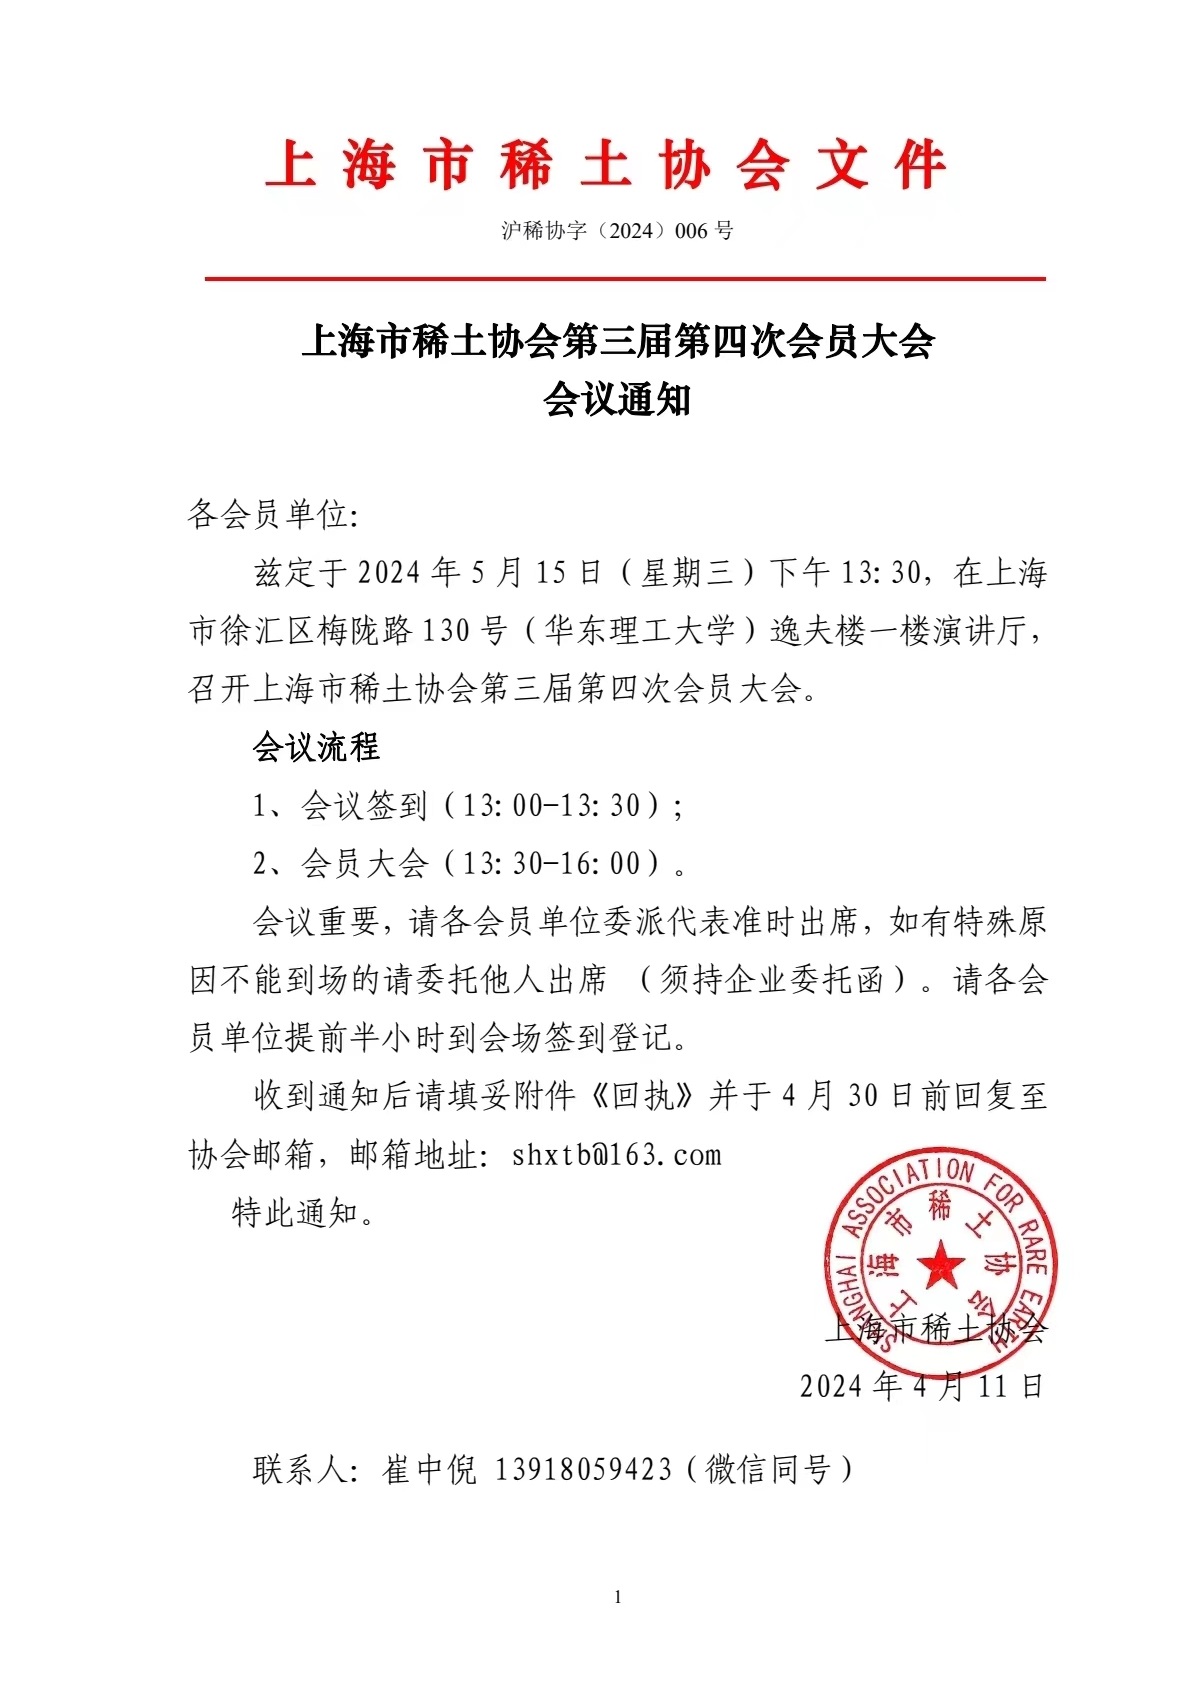 上海市稀土協會第三屆第四次會員大會 會議通知